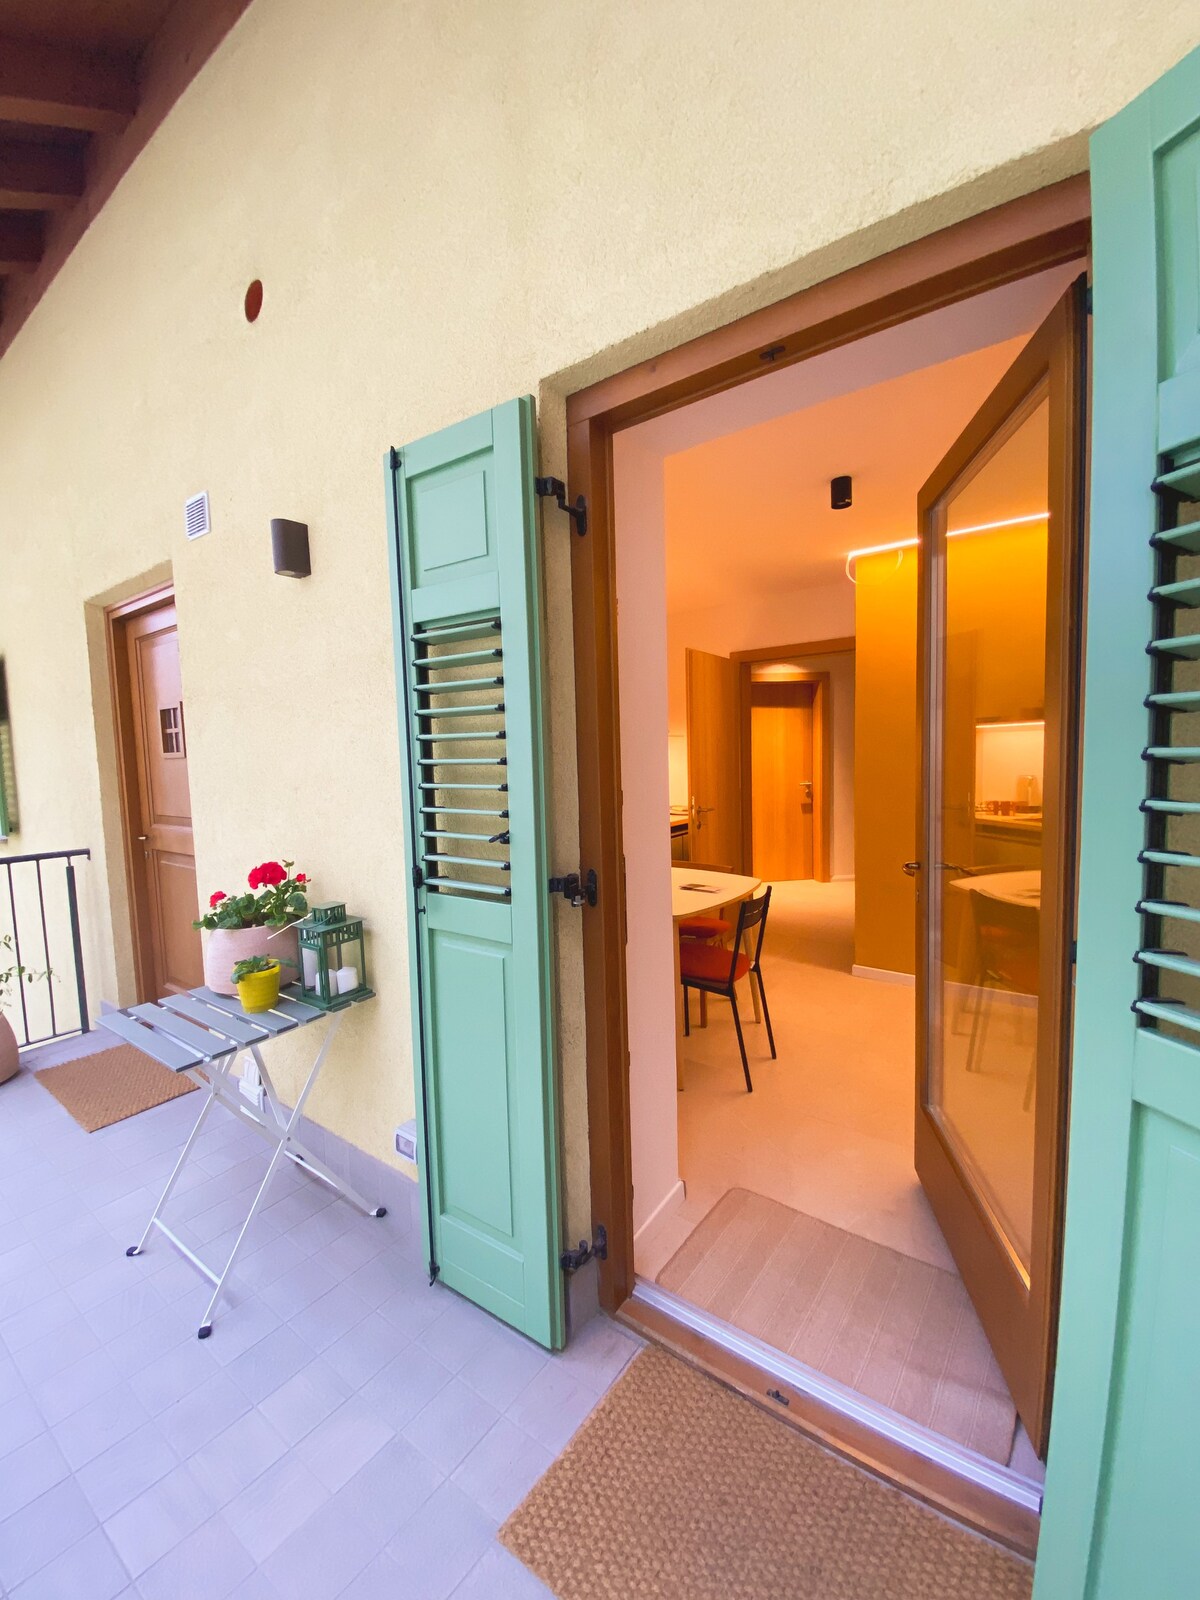 Casa Pradiei double room with Dolomiti view